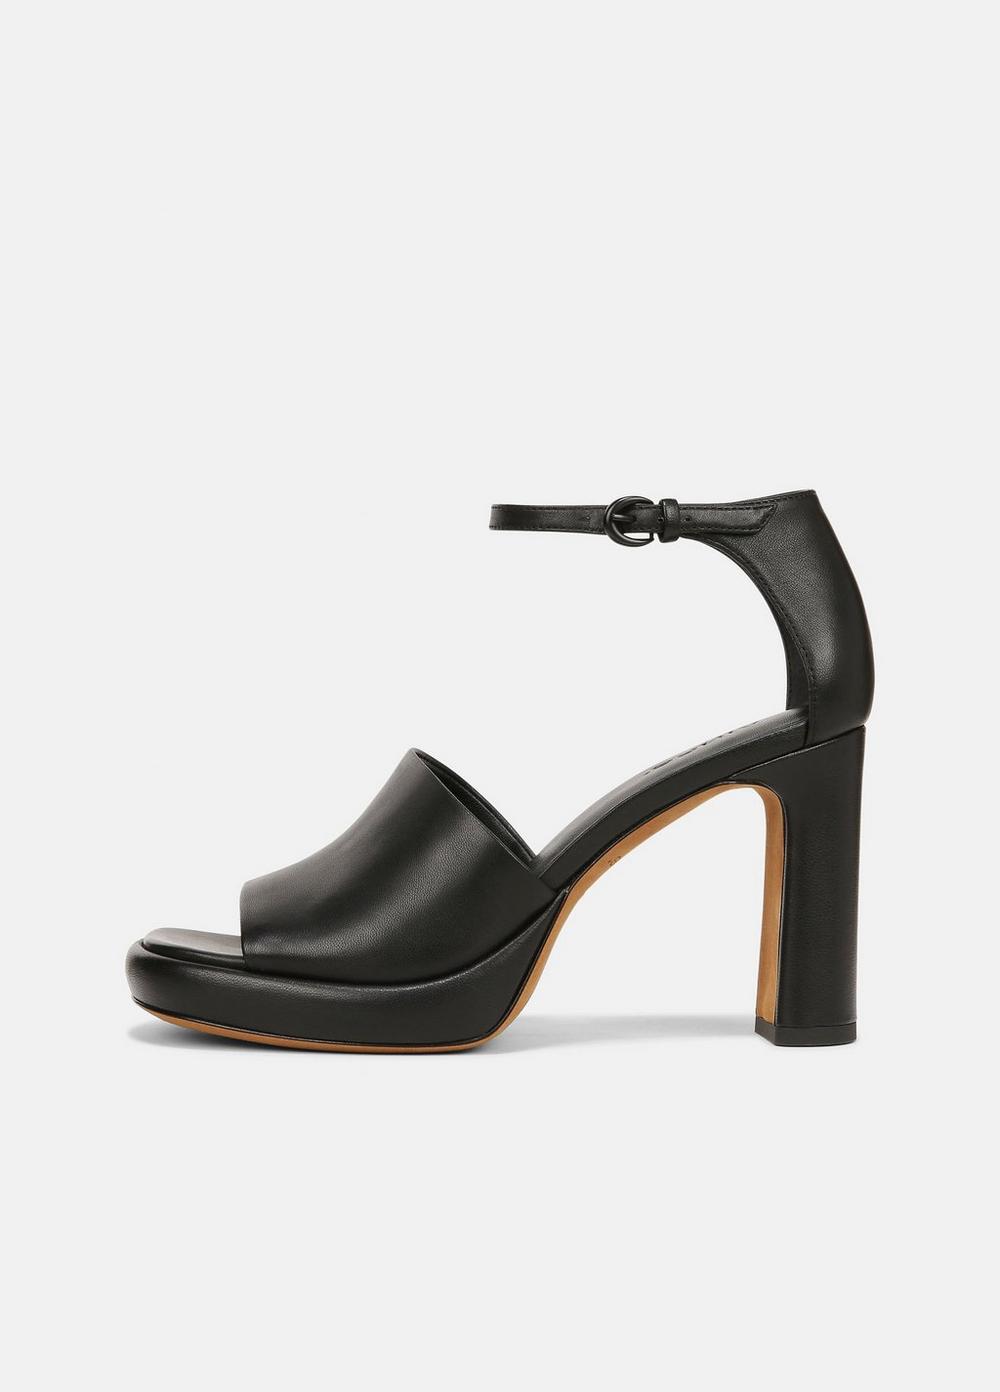 amara leather platform heel, black, size 10 vince